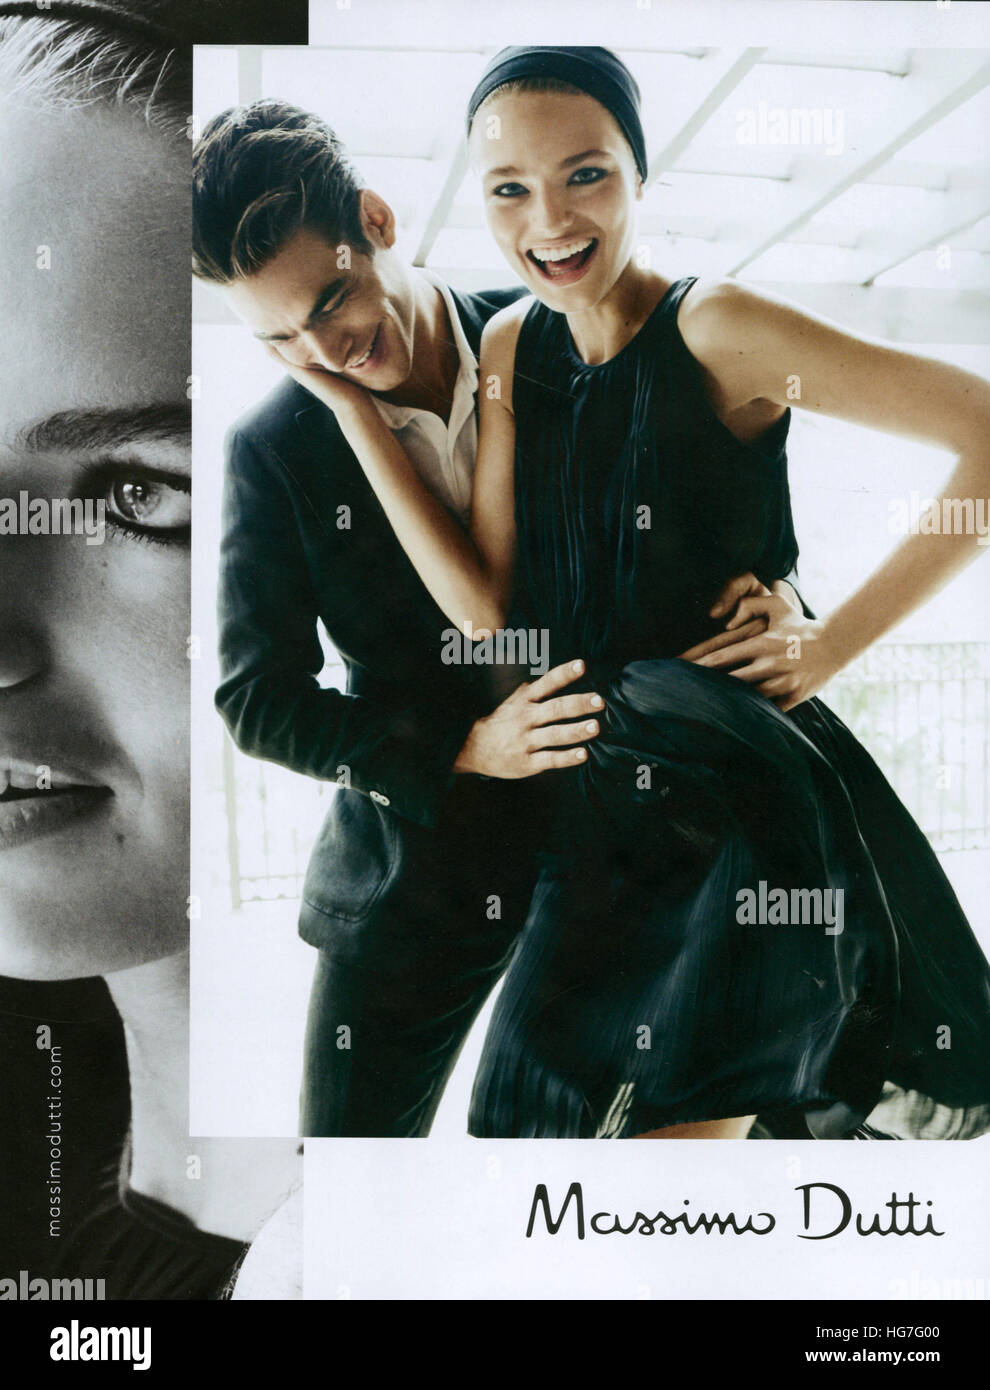 2010s UK Massimo Dutti Magazine Advert Stock Photo - Alamy